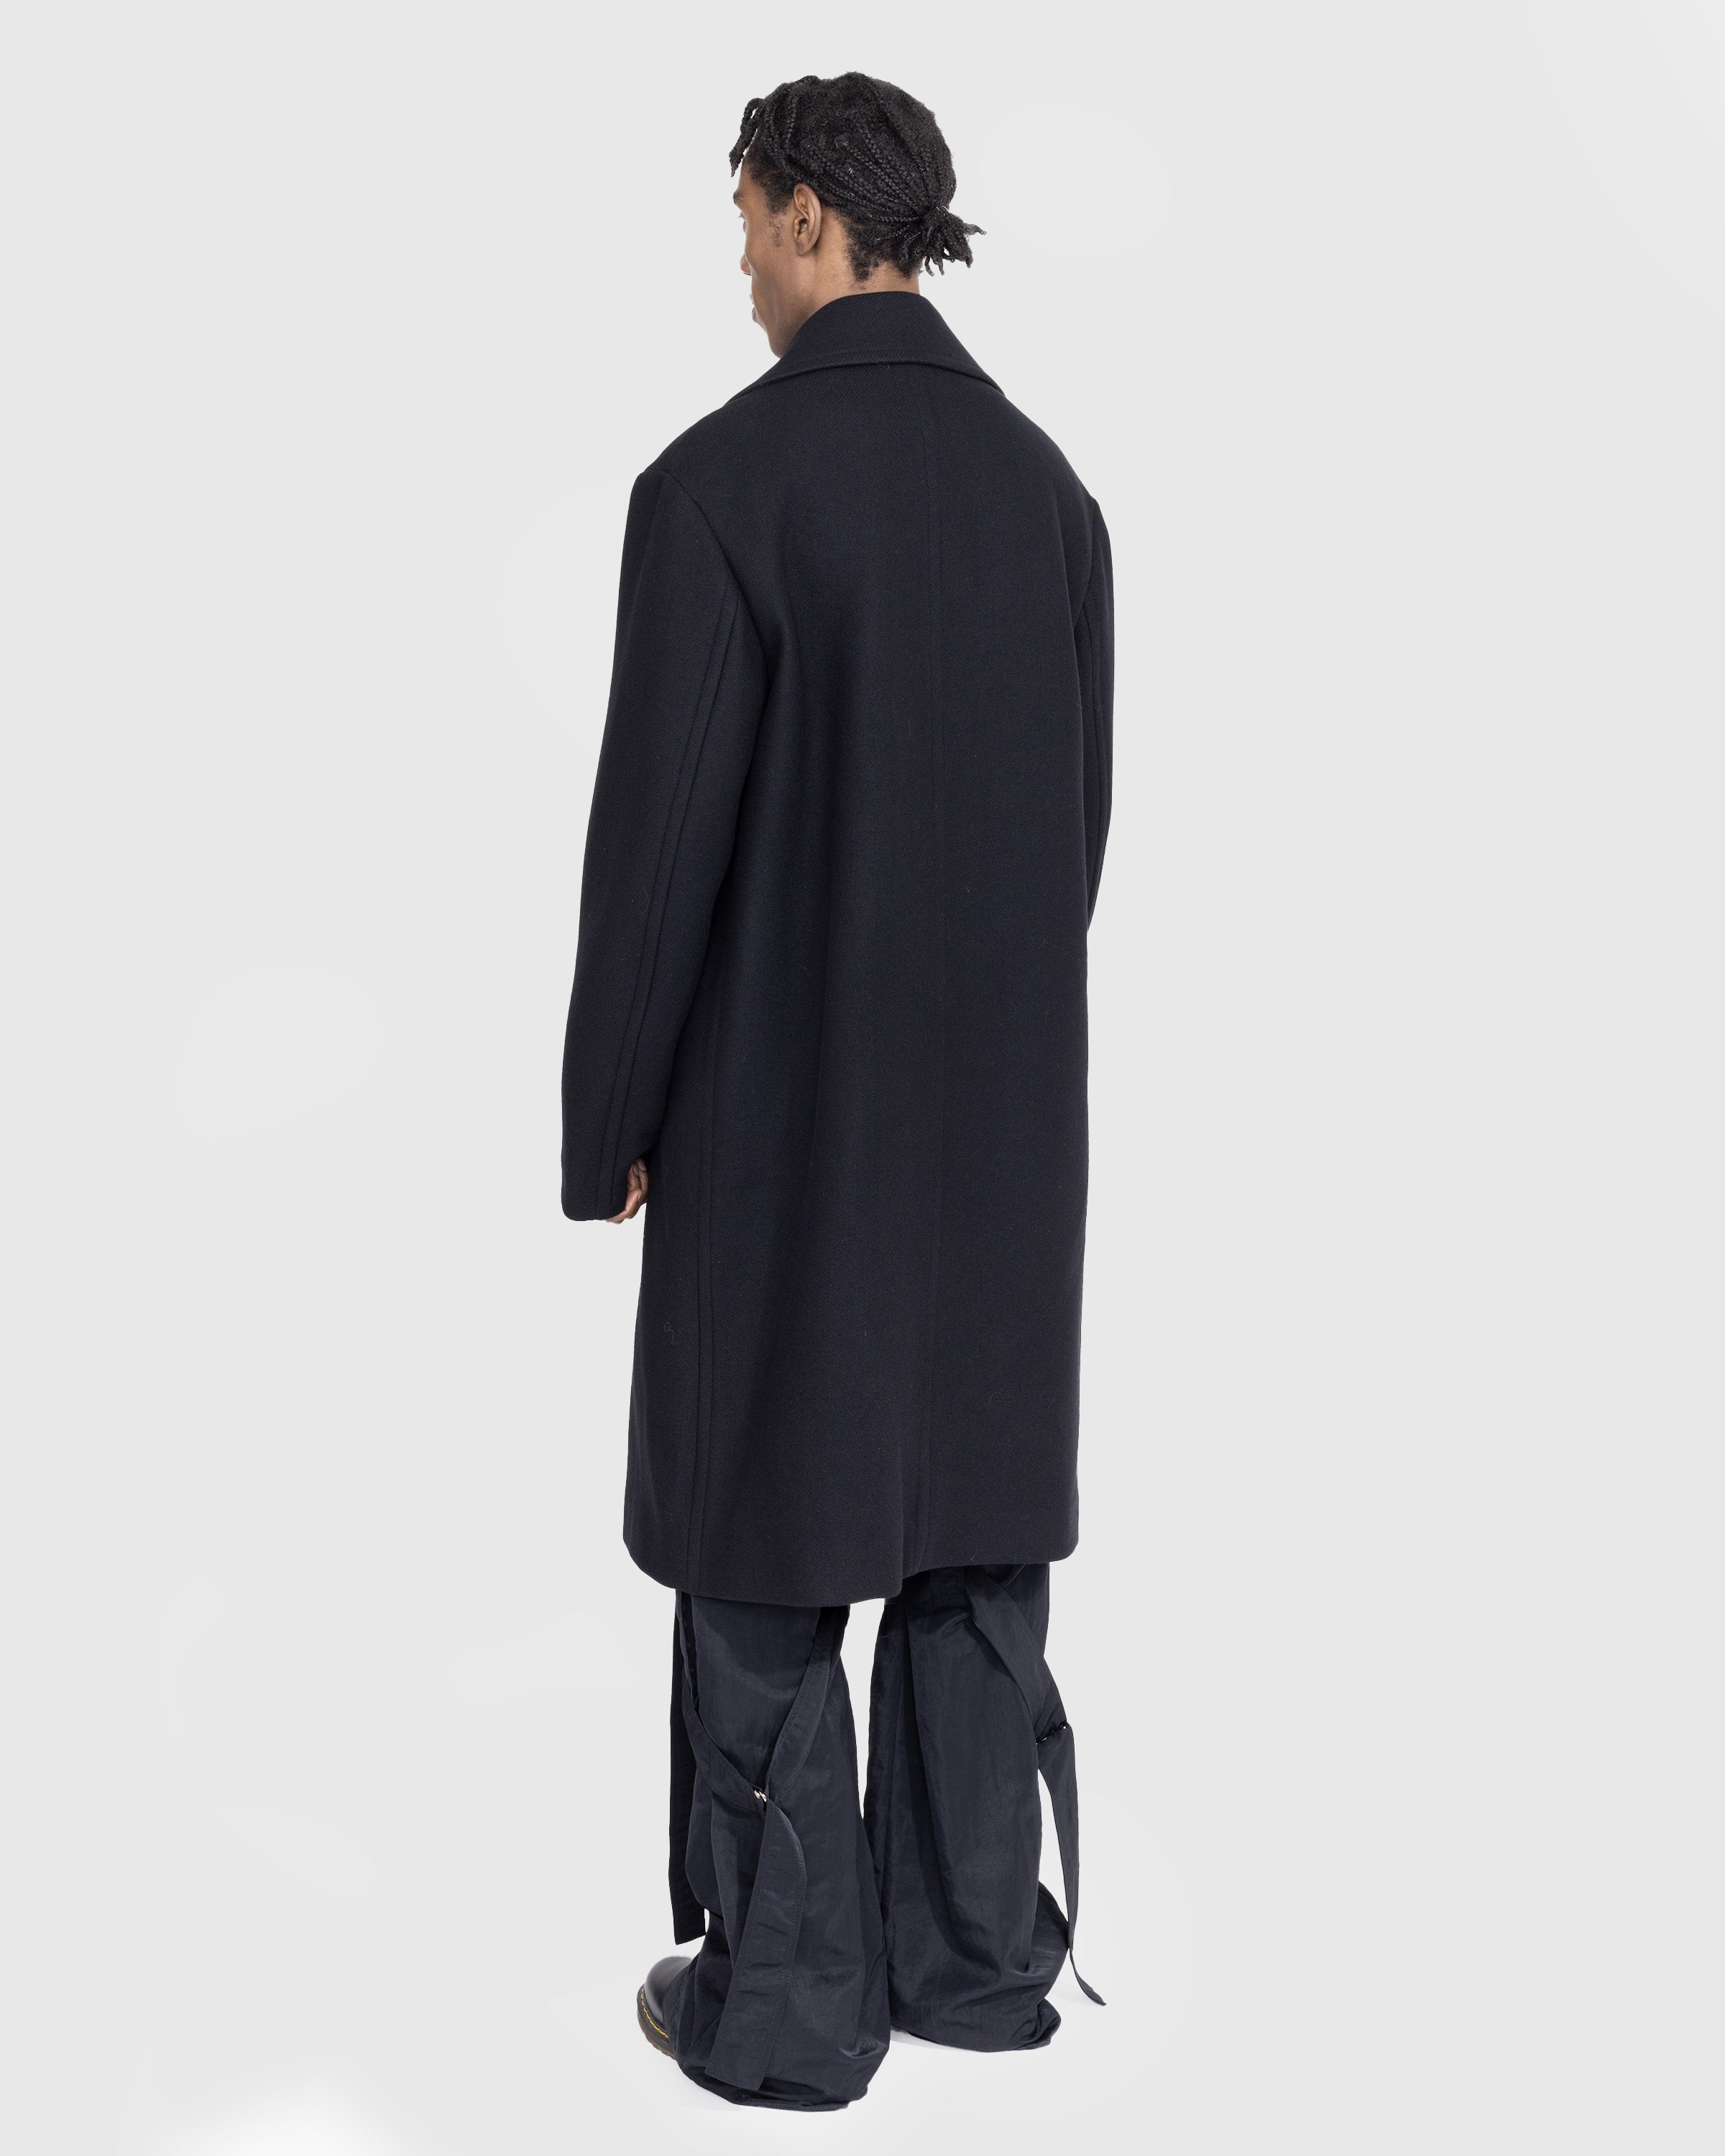 Dries van Noten - Raven Coat Black - Clothing - Black - Image 3